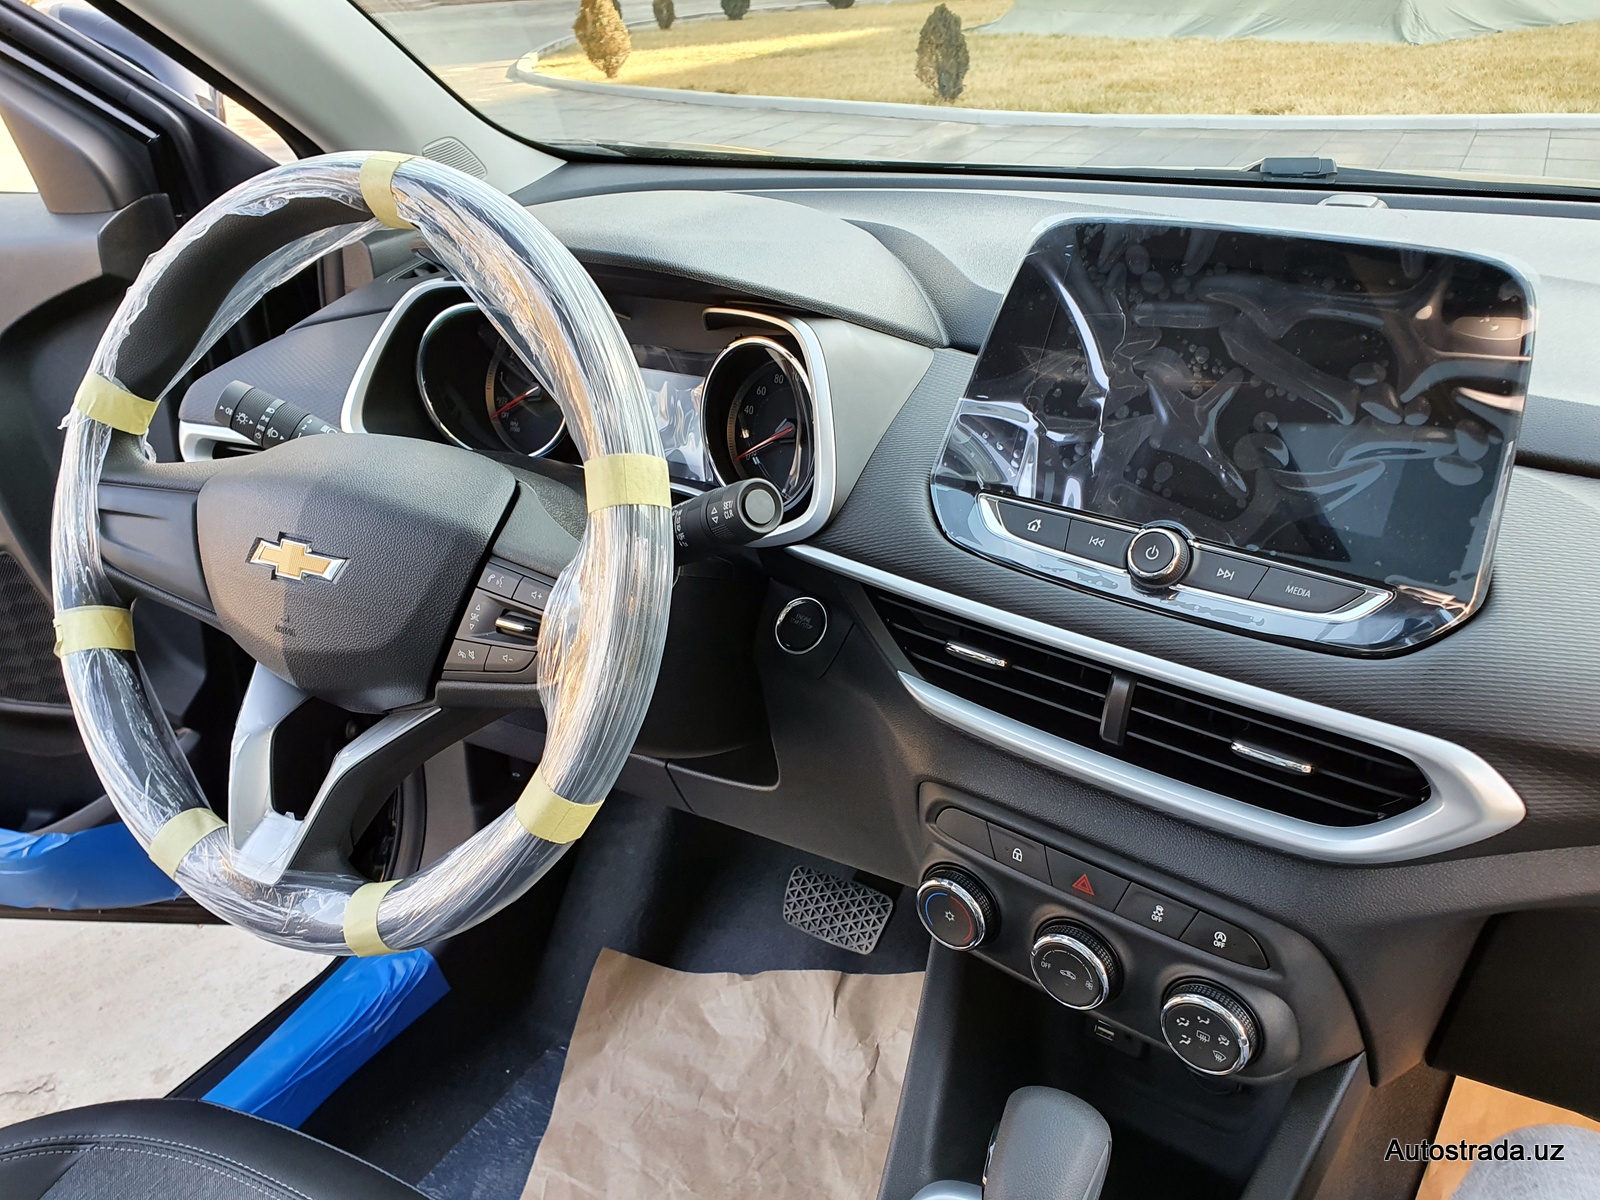 Chevrolet Tracker 2020 модельного года может заменить текущее поколение паркетника в Узбекистане. UzAuto Motors готовит новую модель к производству, сообщают источники.